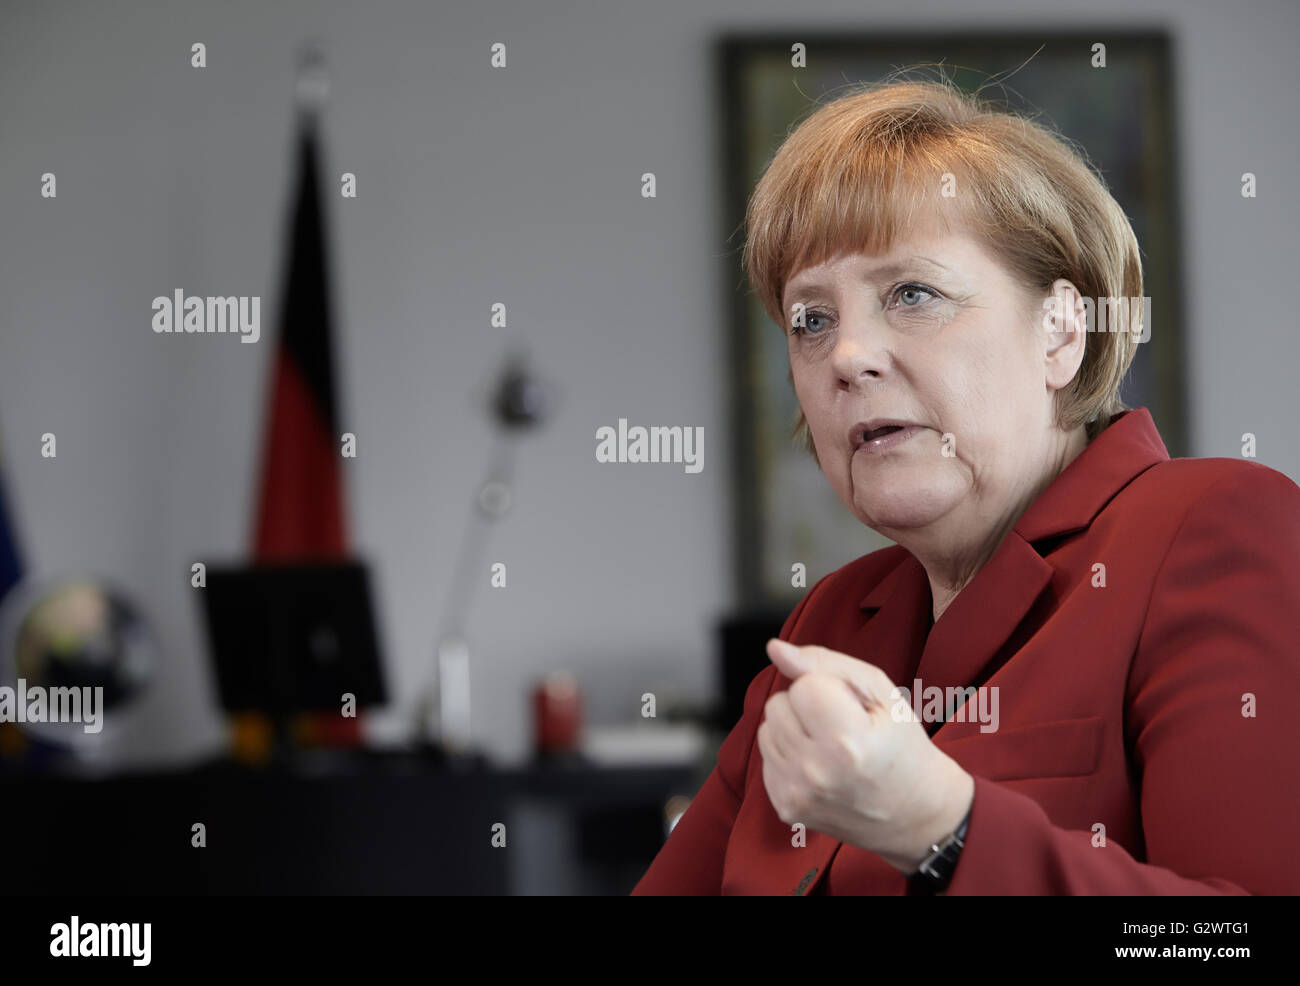 27.05.2013, Berlin, Berlin, Germania - Cancelliere Angela Merkel (CDU) gesti durante un colloquio presso la cancelleria federale a Berlino. 0PA130527D009CAROEX.JPG - non per la vendita in G E R M A N Y, A U S T R I A, S W I T Z e R L A N D [modello di rilascio: NO, la proprietà di rilascio: NO, (c) caro agenzia fotografica / Ponizak, http://www.caro-images.com, info@carofoto.pl - Qualsiasi uso di questa immagine è soggetto a royalty!] Foto Stock